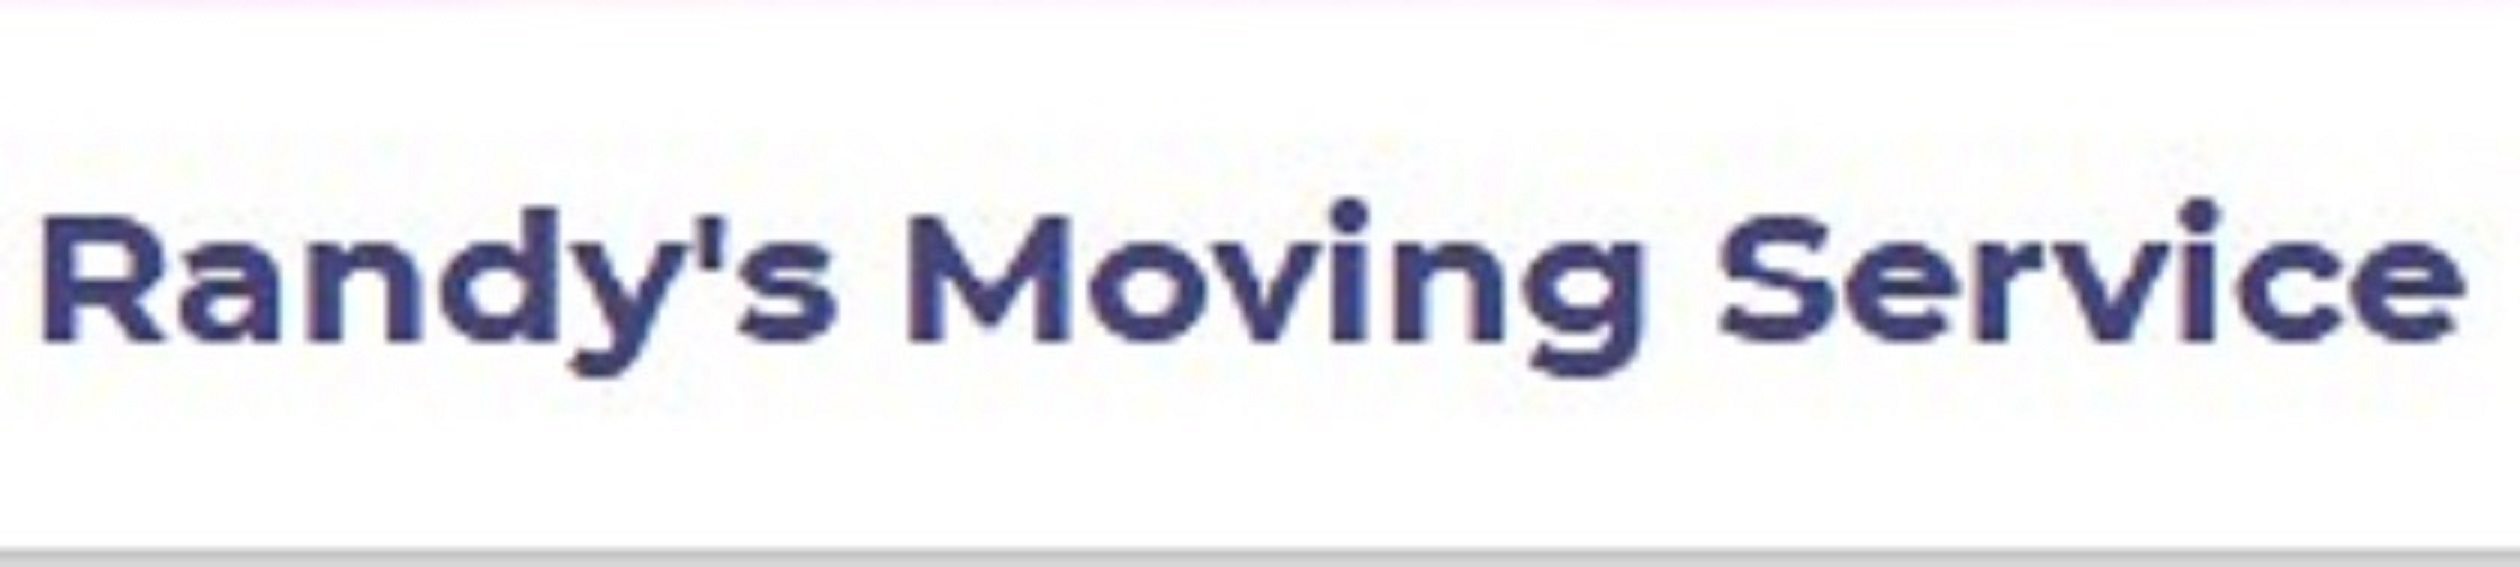 Randy's Moving Service company logo